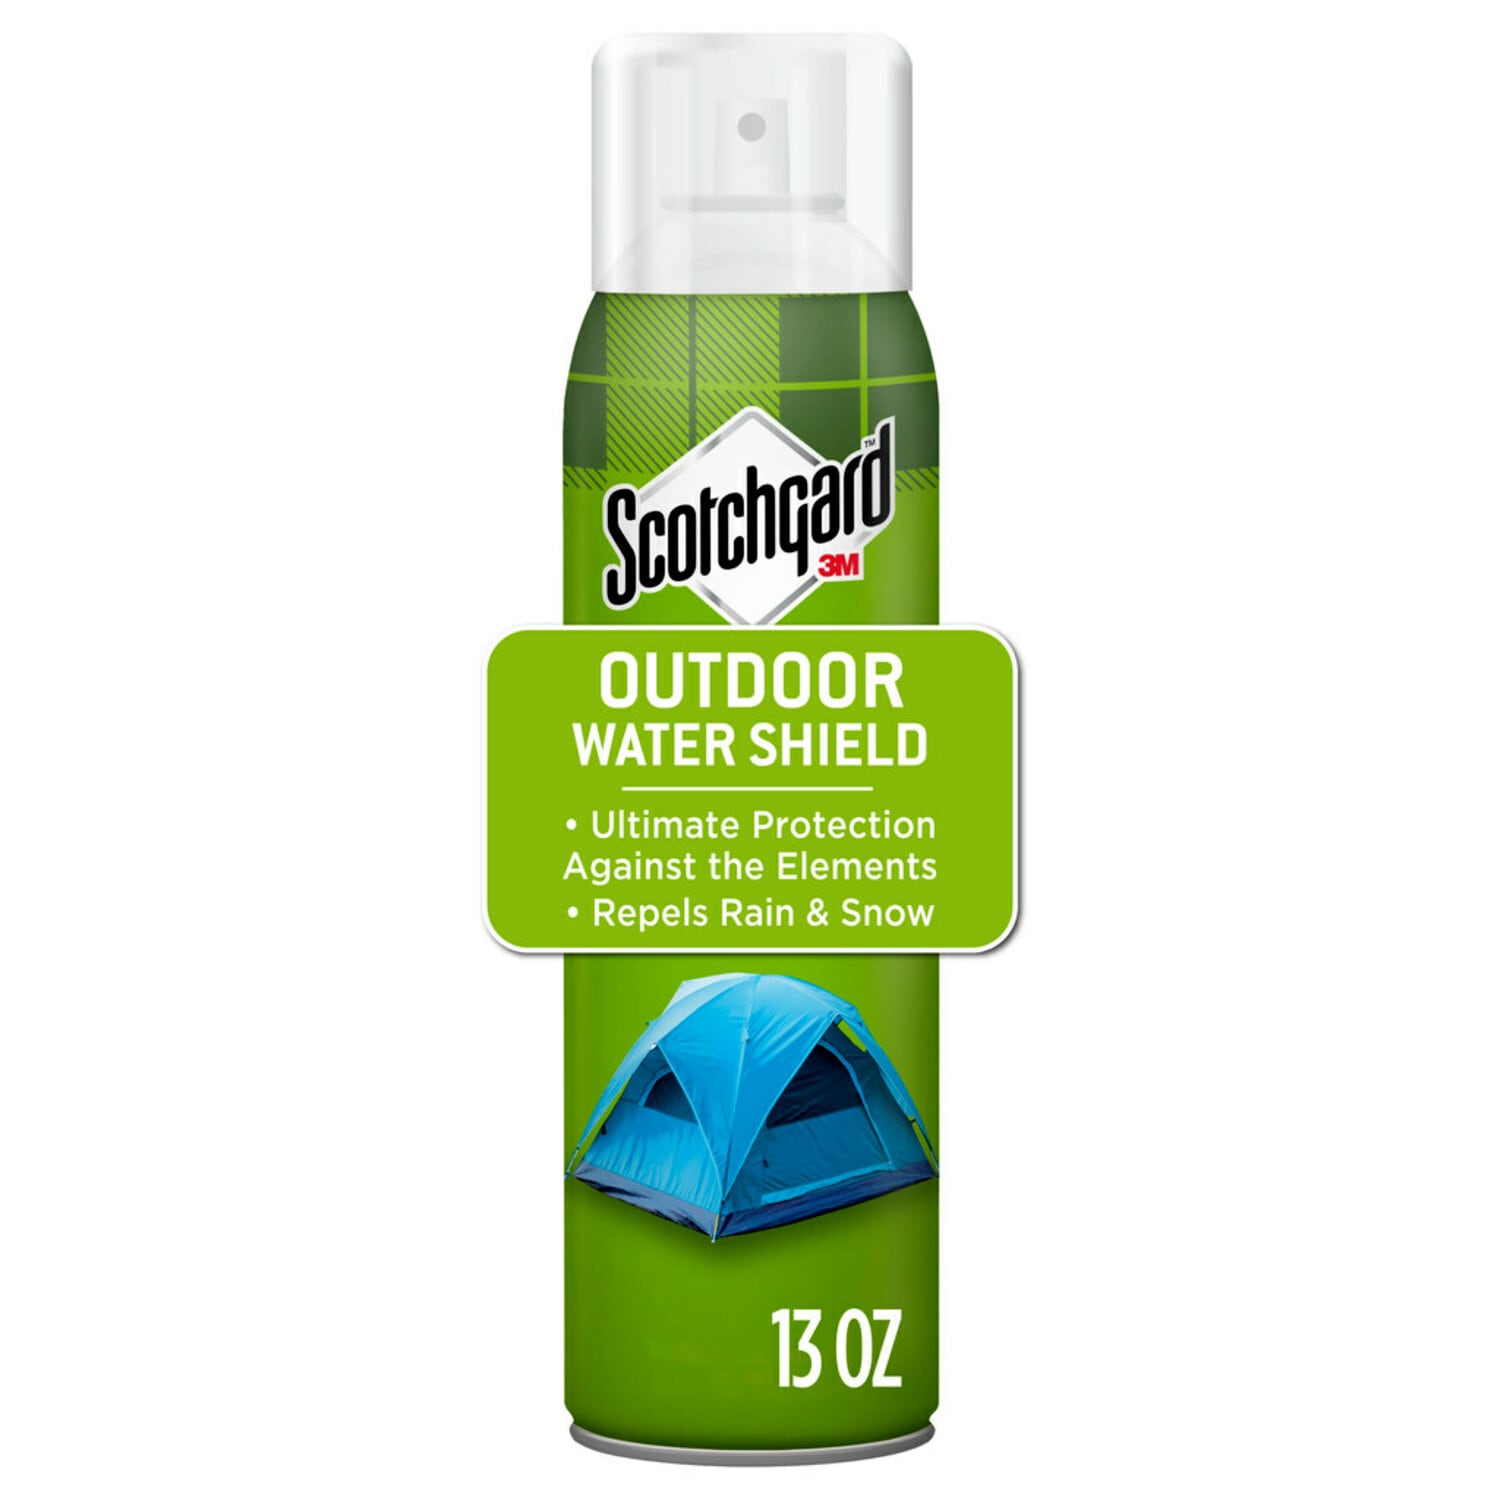 7010371196 - Scotchgard Outdoor Water Shield 5020-13, 13 oz. (368 g)